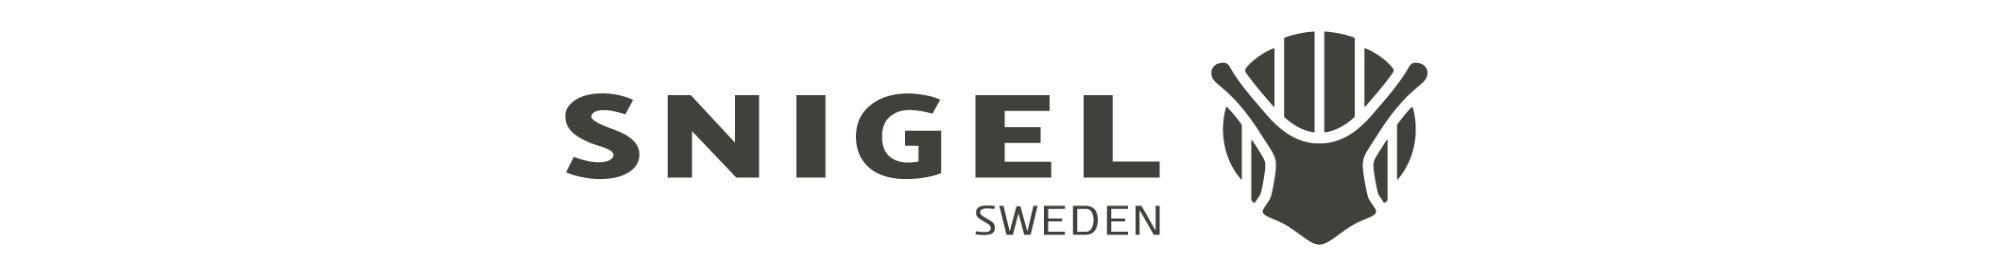 Köp Snigel från TacNGear. Sveriges största återförsäljare av Snigel. - TacNGear